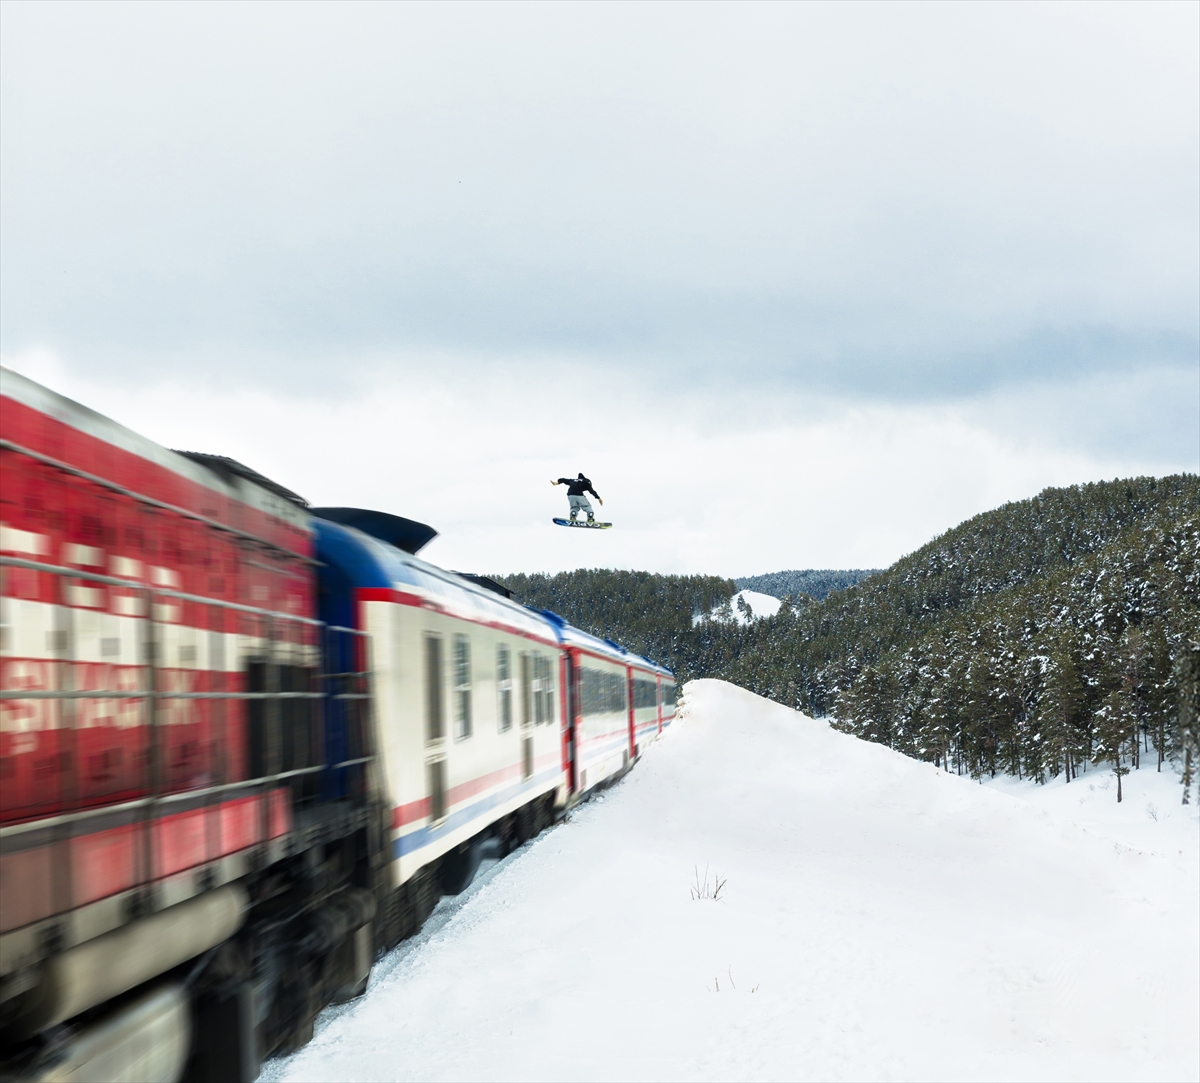 Snowboardcu Süleyman Atlı, Kars'ta tren üzerinden atlayışına nasıl hazırlandığını anlattı: